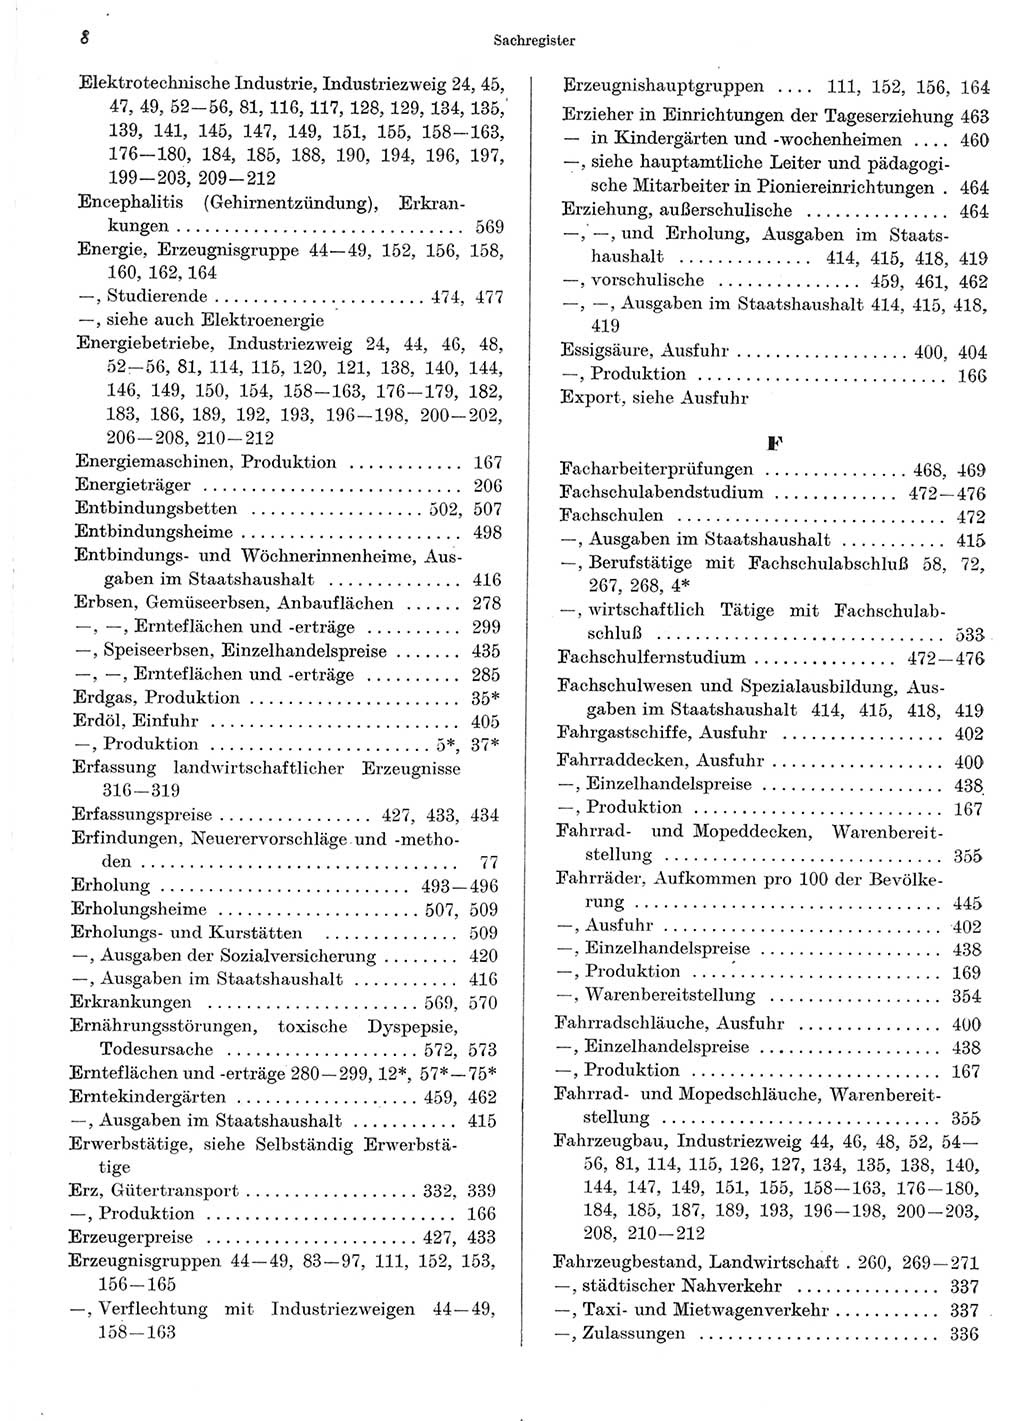 Statistisches Jahrbuch der Deutschen Demokratischen Republik (DDR) 1967, Seite 8 (Stat. Jb. DDR 1967, S. 8)